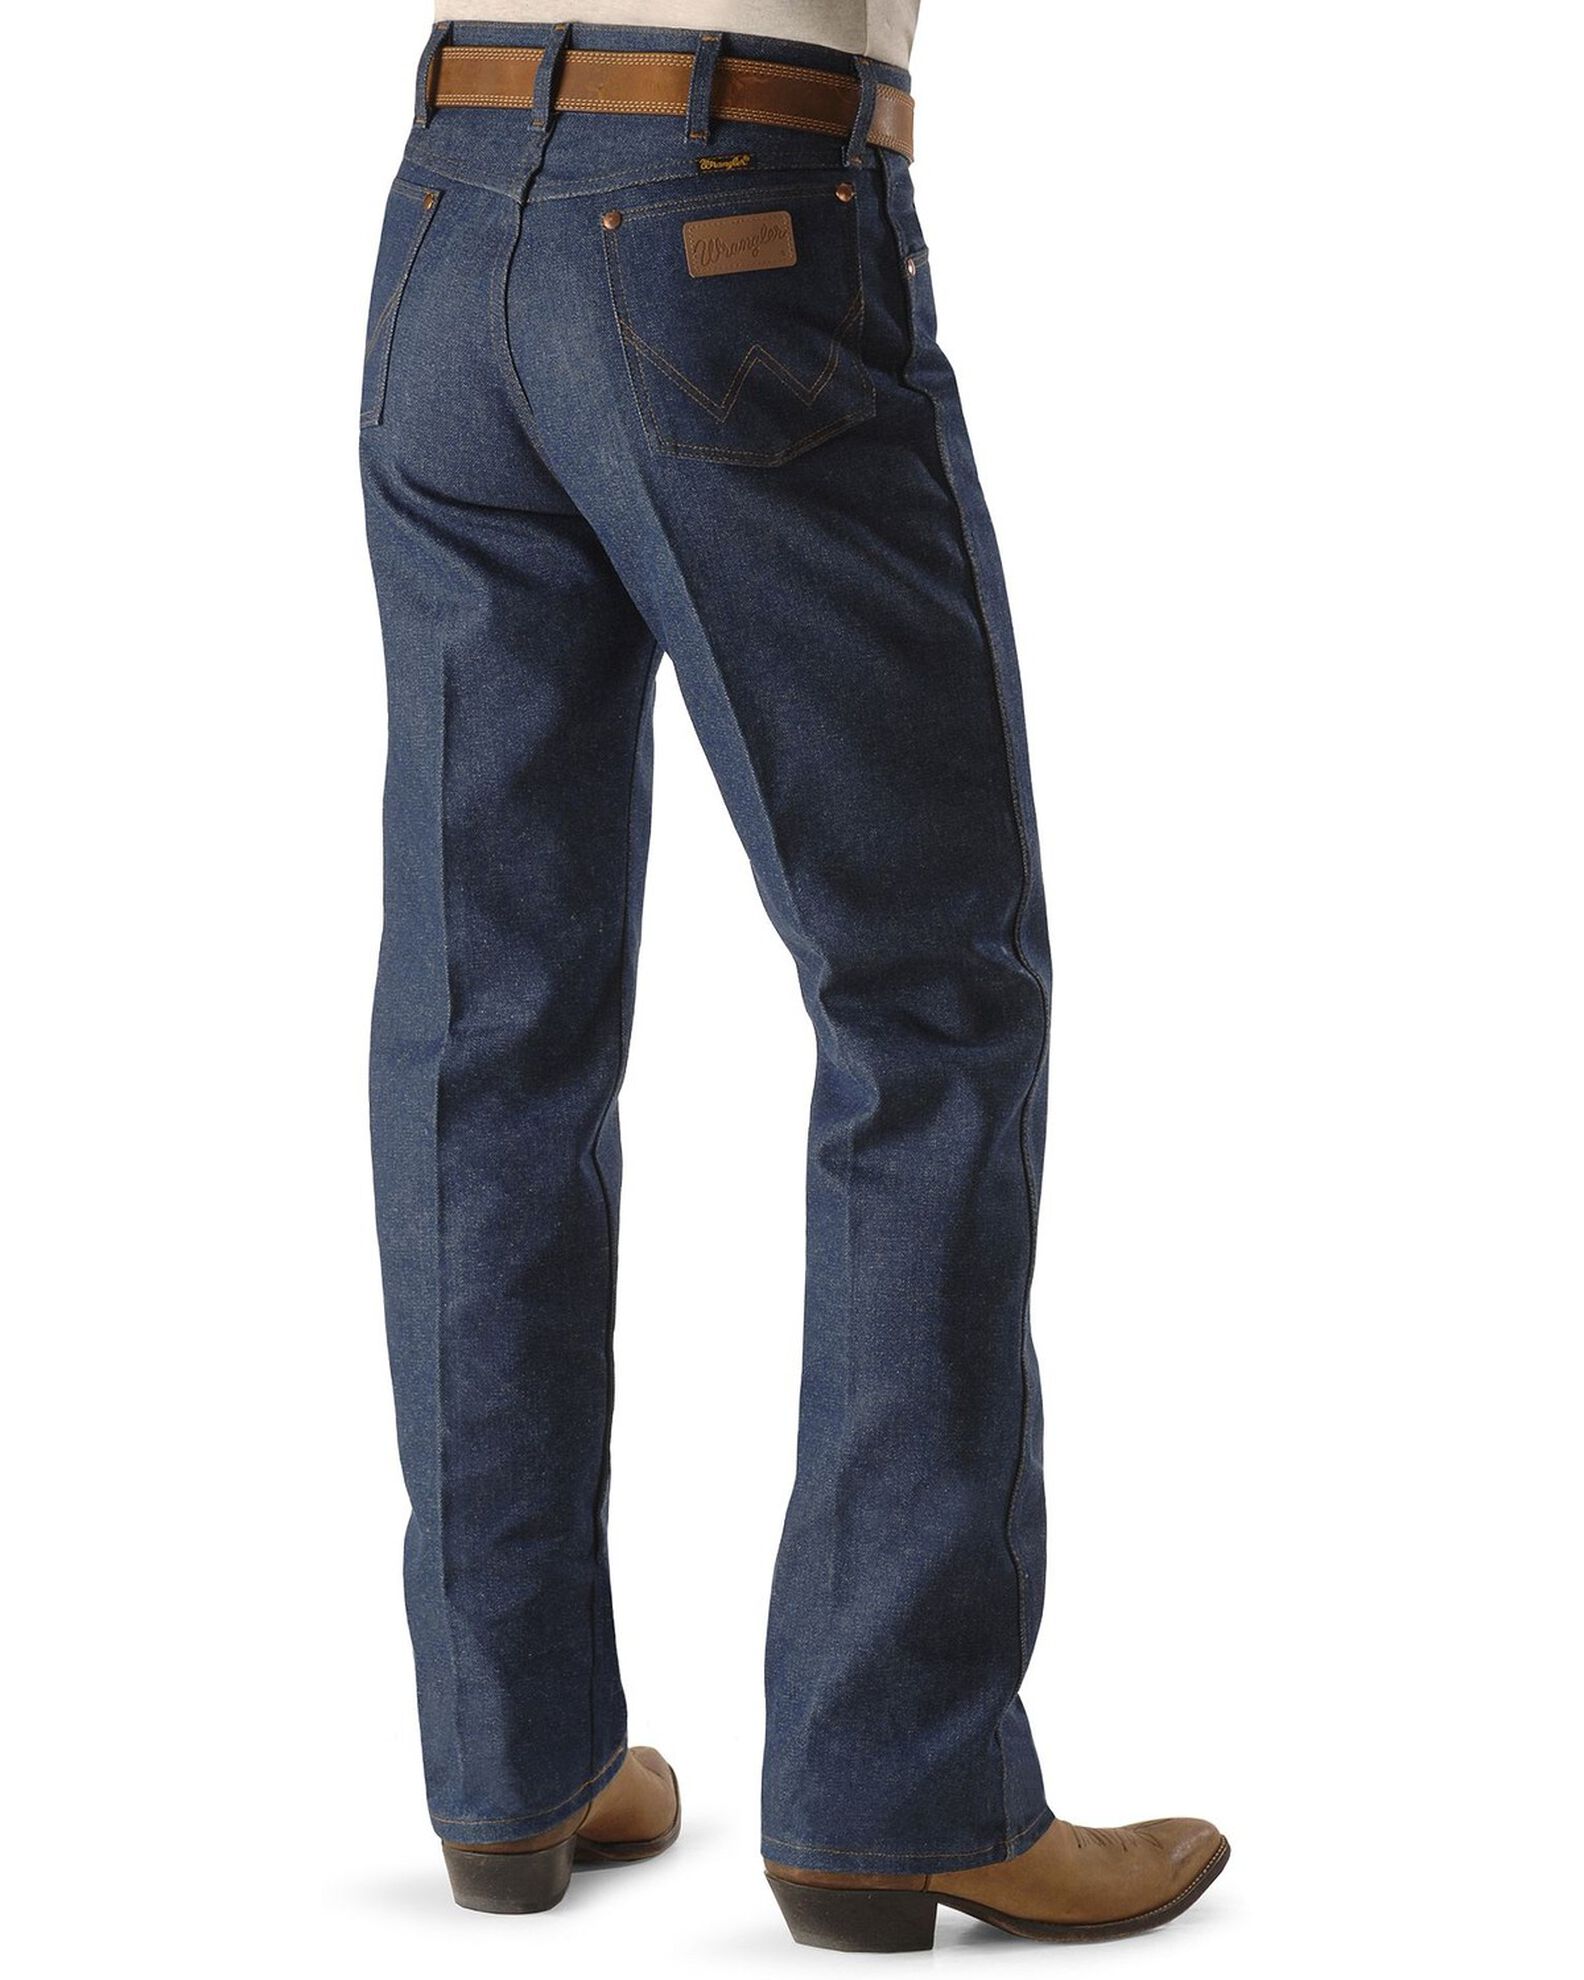 Wrangler Men's 13MWZ Cowboy Cut Rigid Original Fit Jeans - 38 & 40 Tall  Inseams